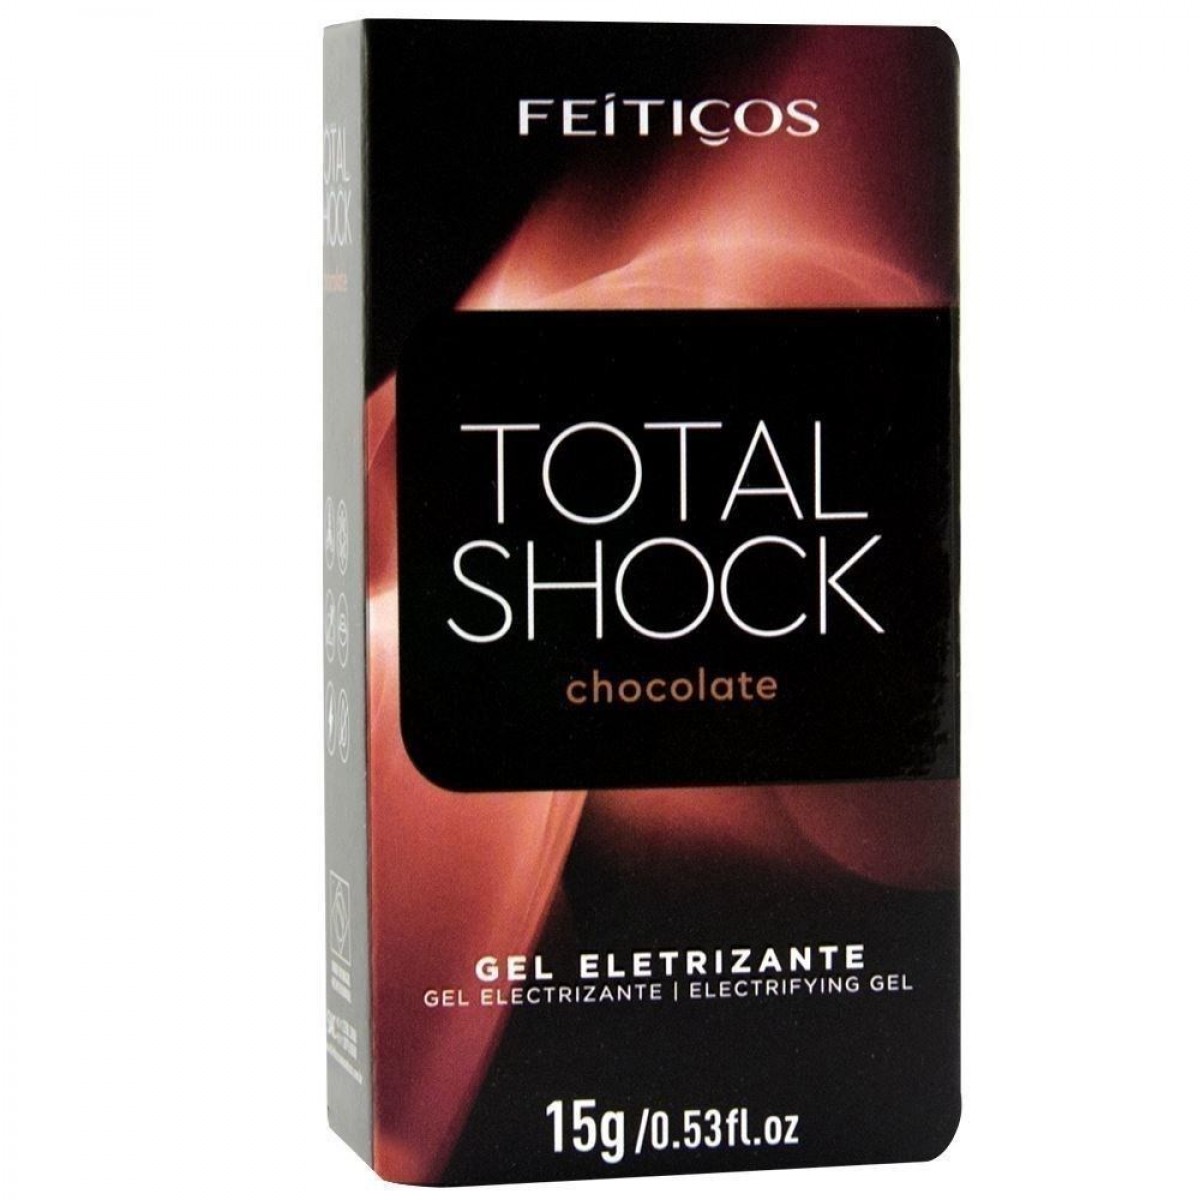 TOTAL SHOCK GEL ELETRIZANTE BEIJÁVEL 15G FEITIÇOS - CHOCOLATE - Chamas do Prazer Sex Shop